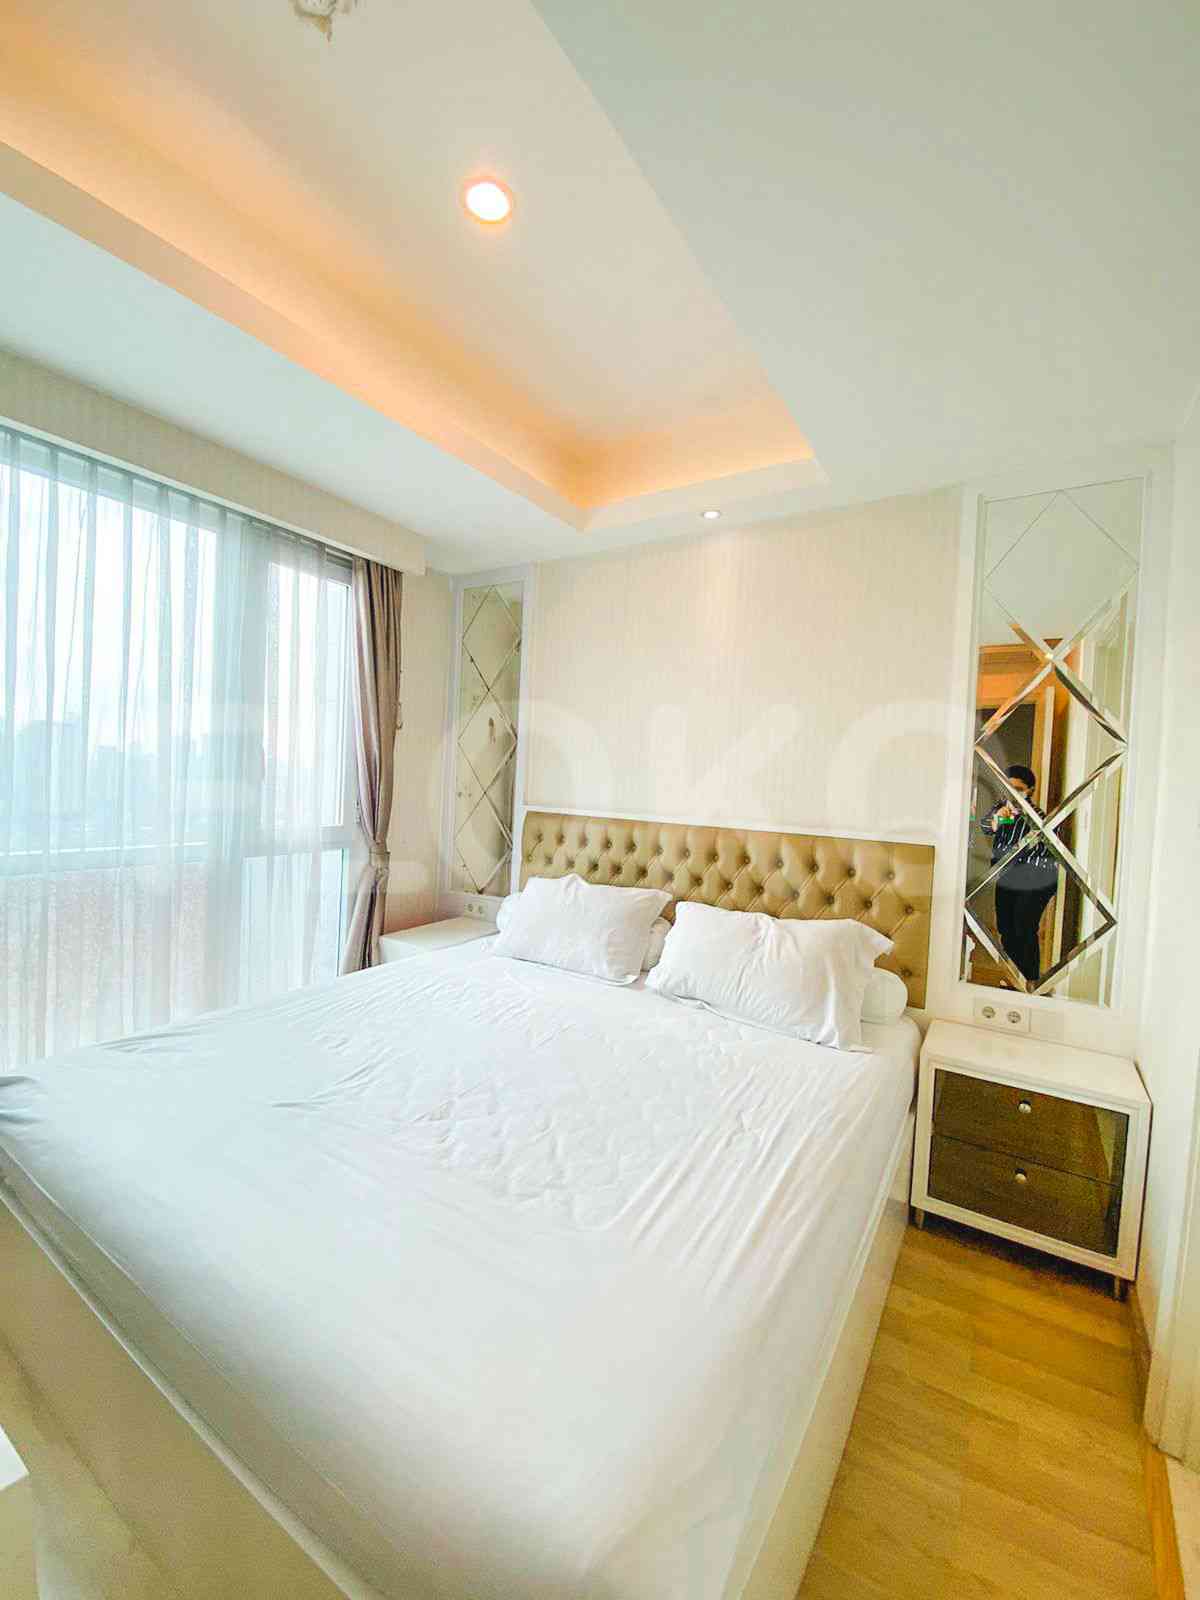 3 Bedroom on 17th Floor for Rent in Casa Grande - fte656 1